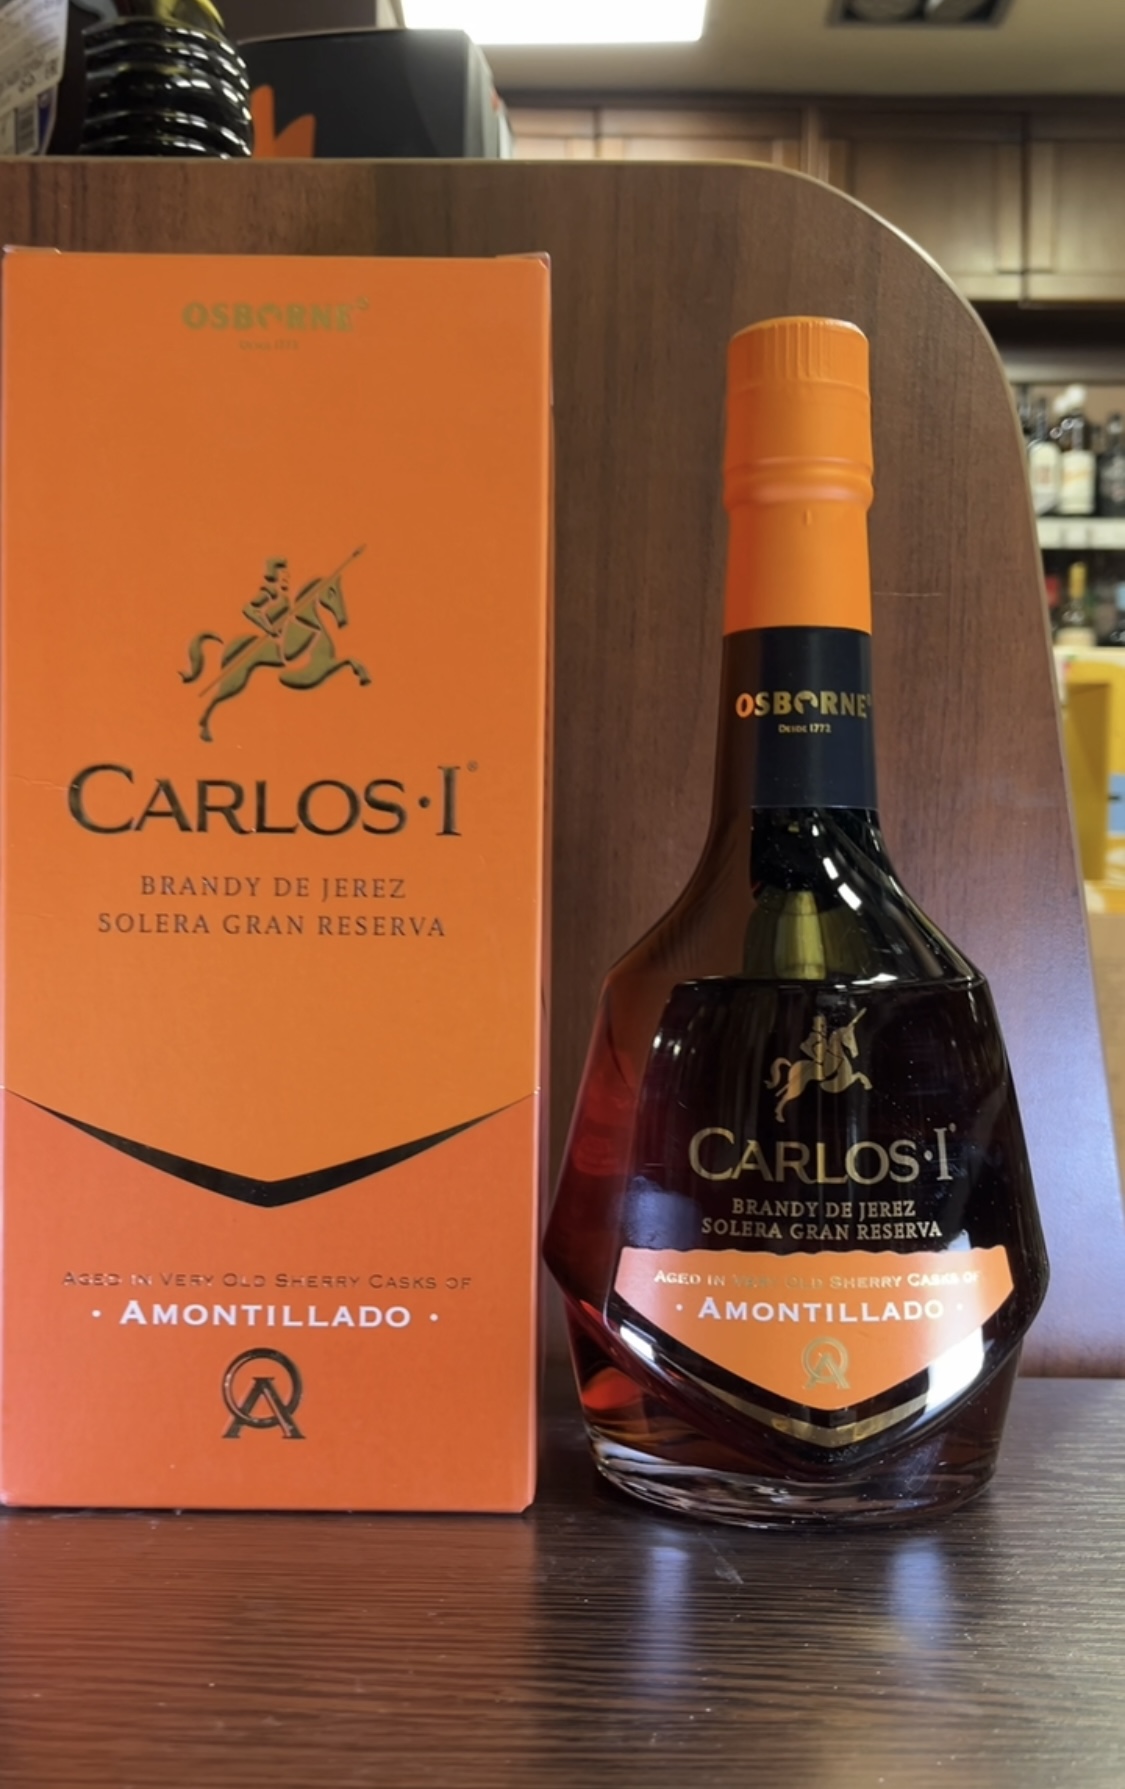 Carlos I Amontillado Бренди де Херес Карлос I Амонтилладо 0.7л в подарочной упаковке